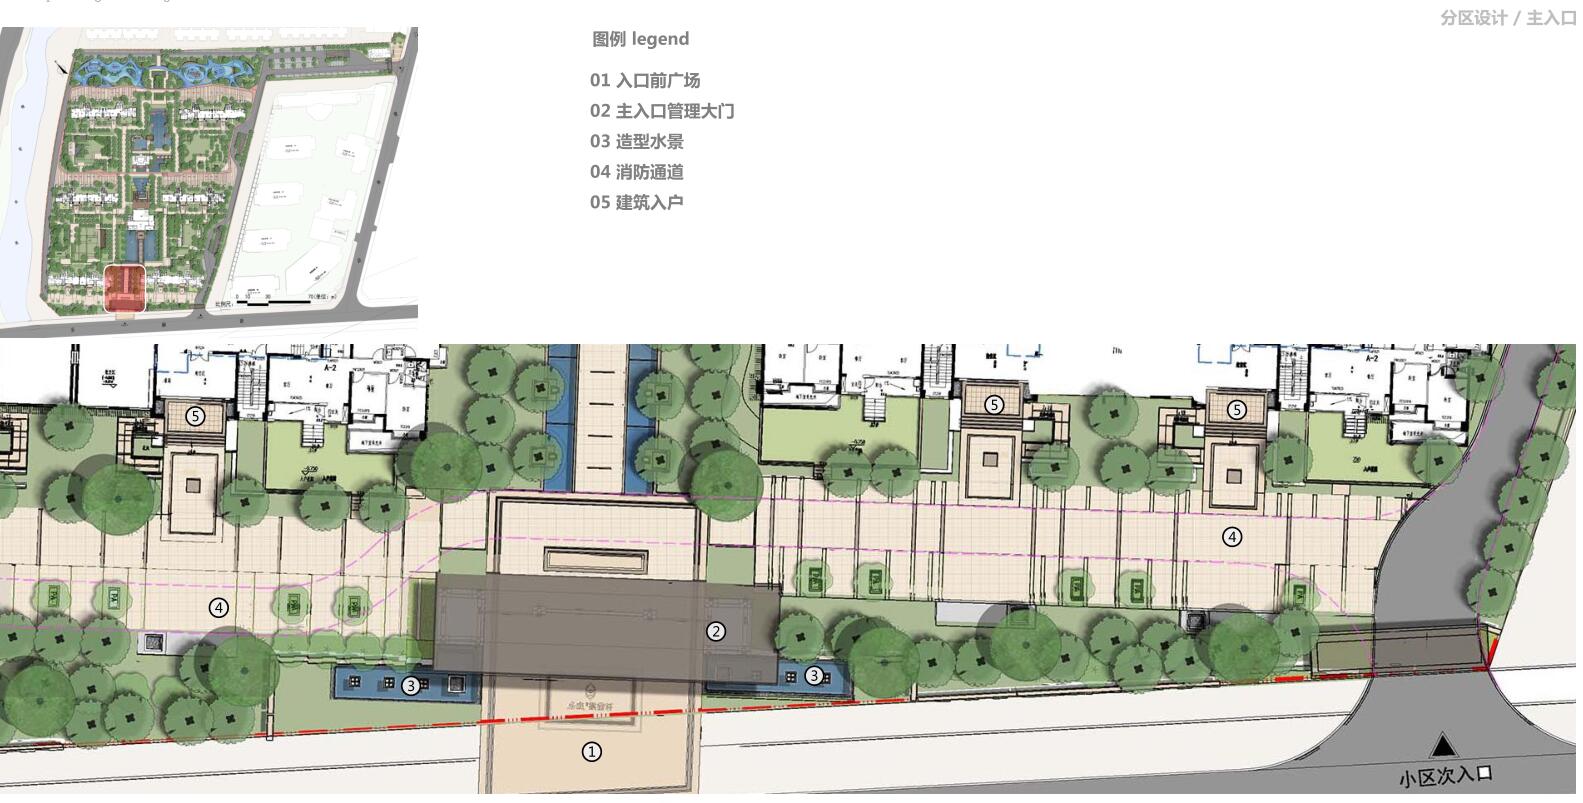 [江西]新中式住宅景观方案设计-分区设计 主入口